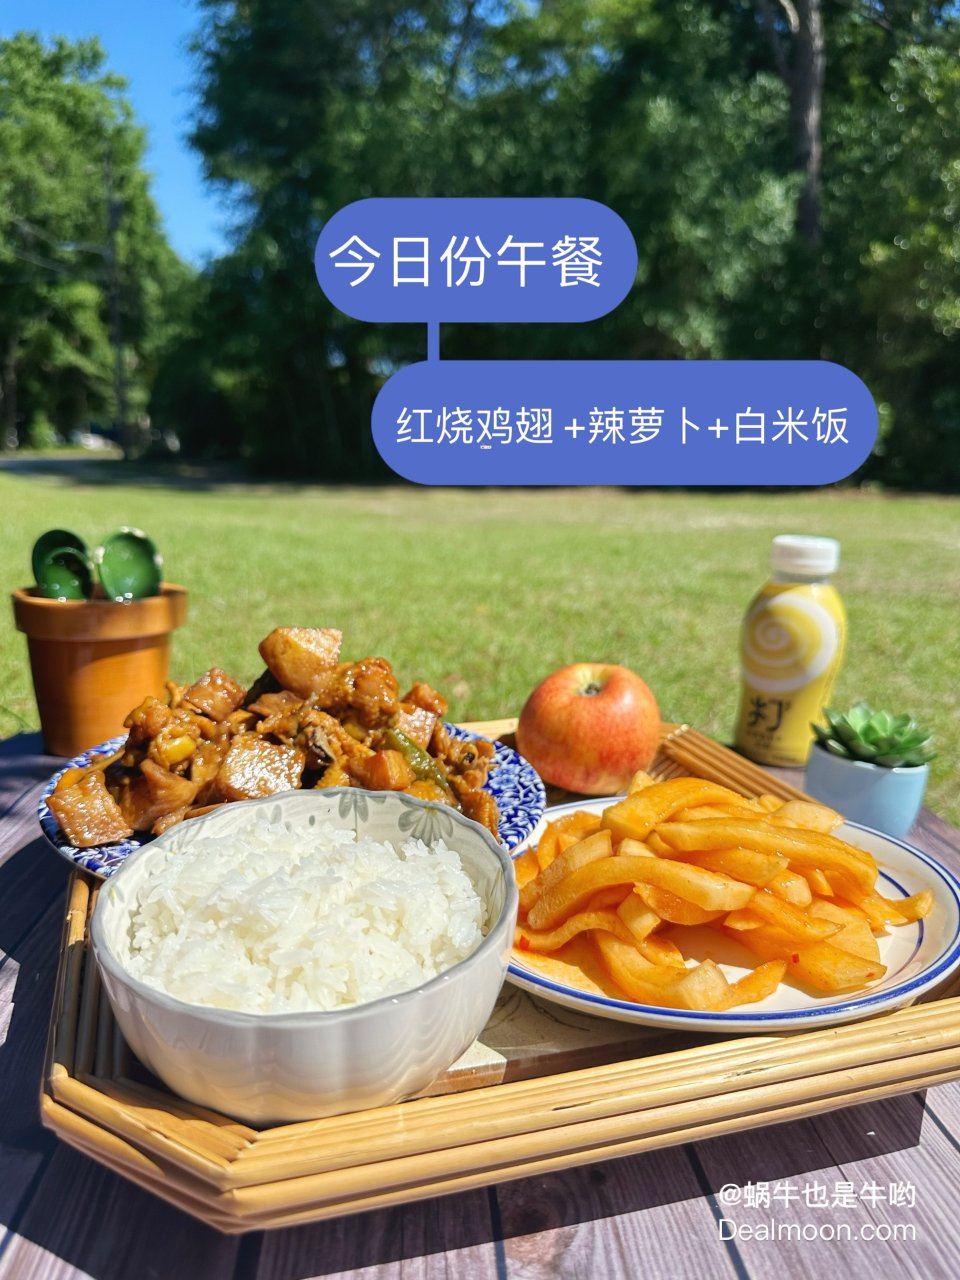 今日份午餐 红烧鸡翅 +辣萝卜+白米饭 ...